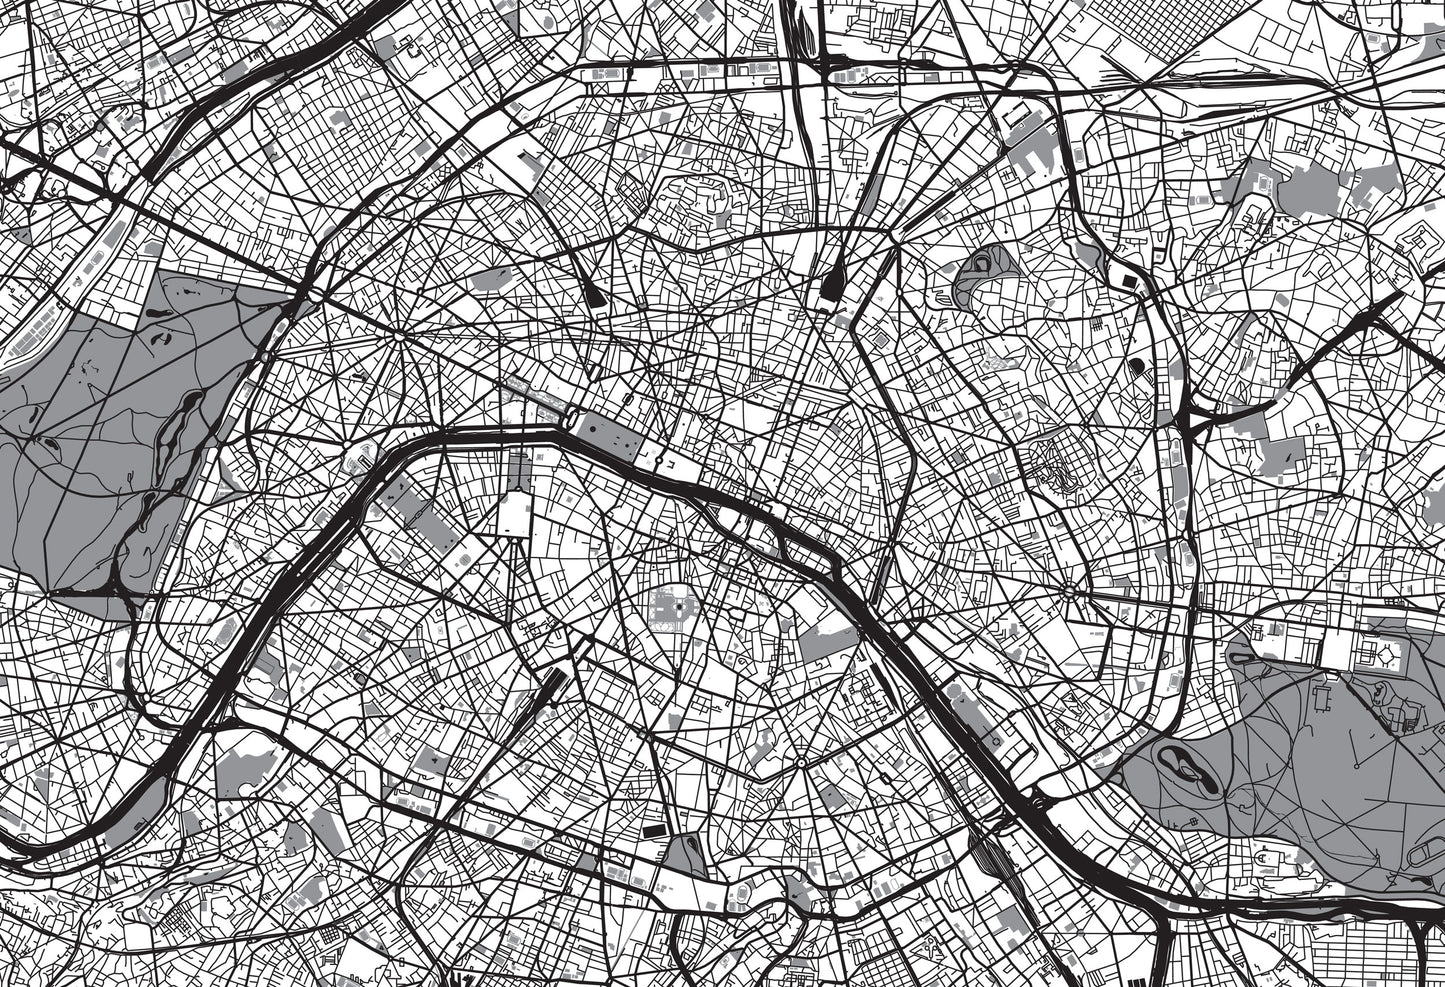 Paris Map Mural